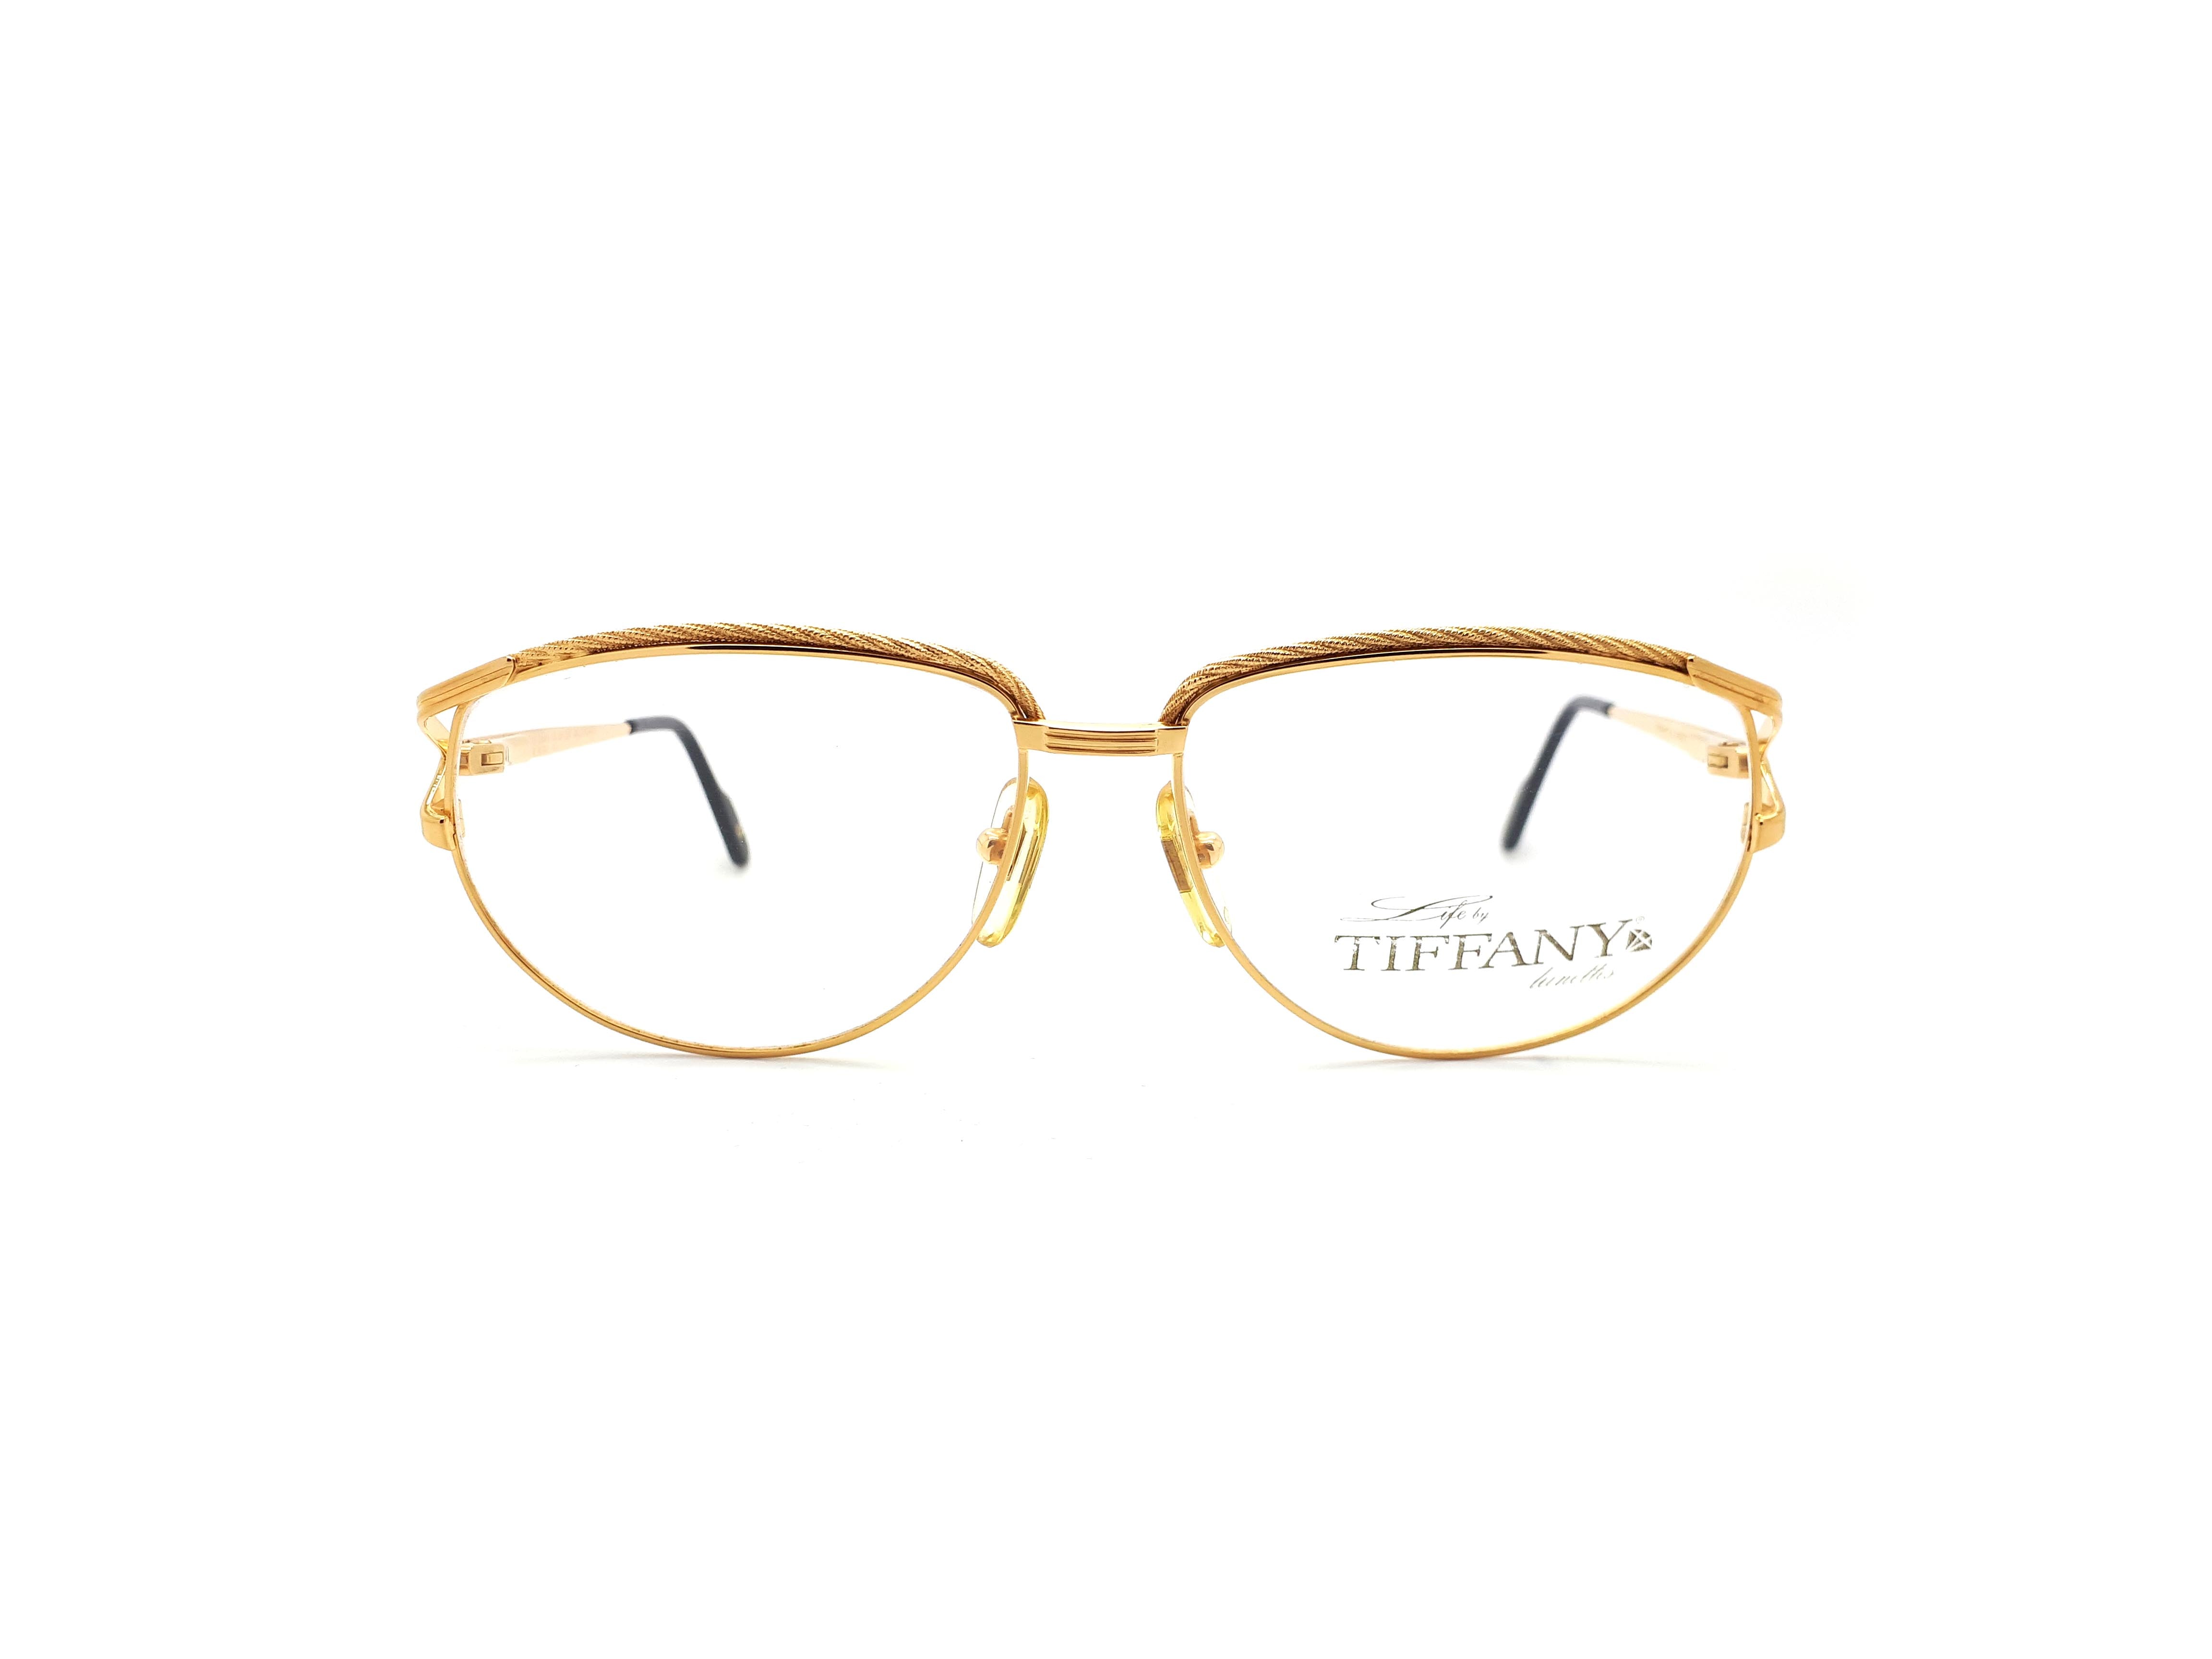 7,960円TIFFANY LUNETTES ヴィンテージ 眼鏡 ティファニー ルネッツ